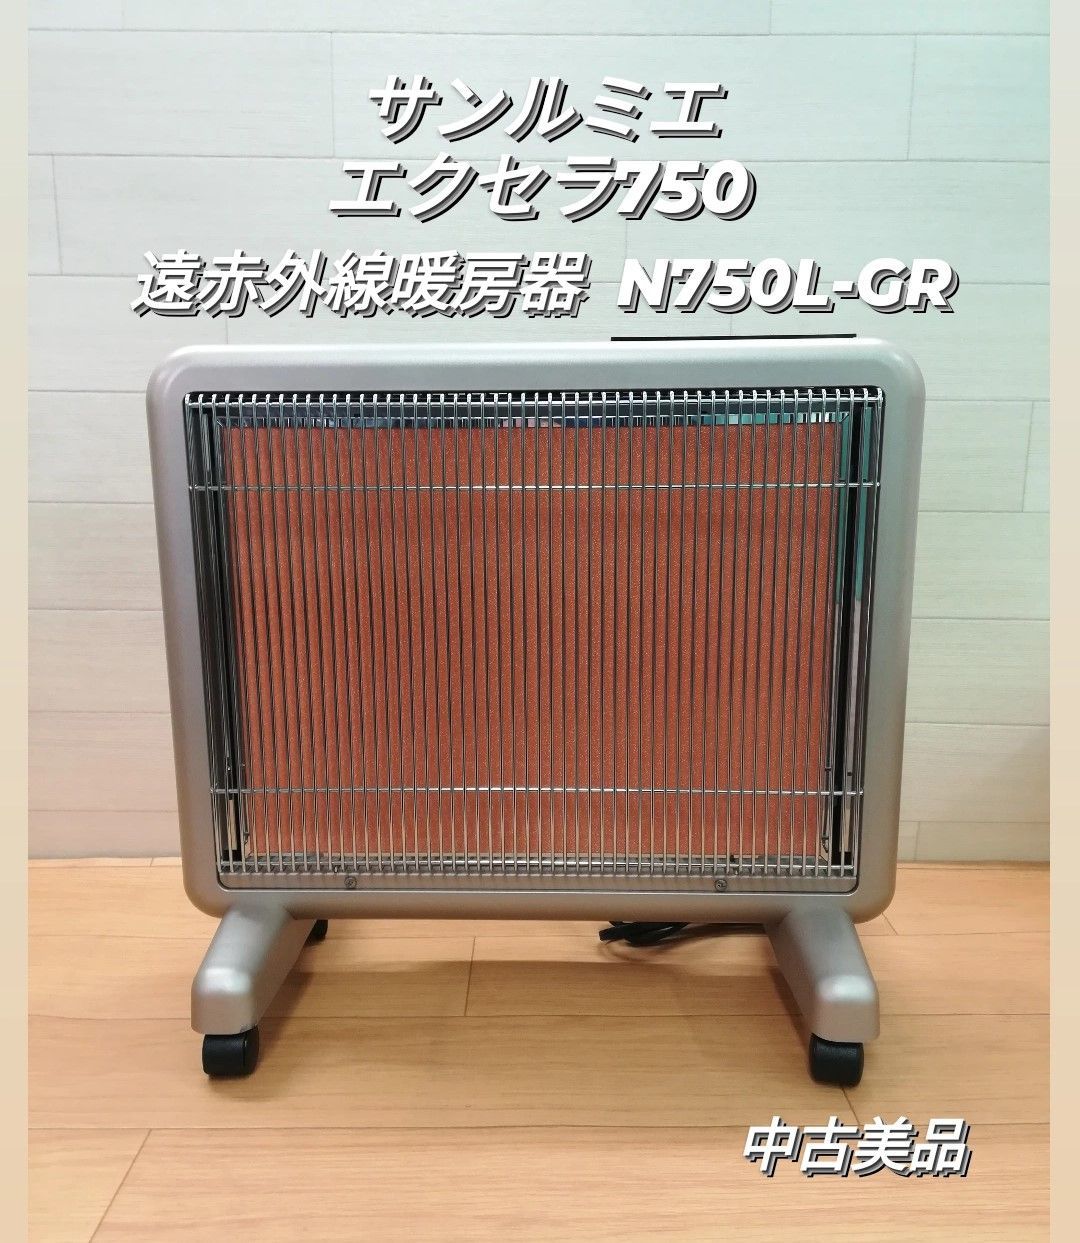 【美品】サンルミエ エクセラ750 遠赤外線暖房器 N750L-GR